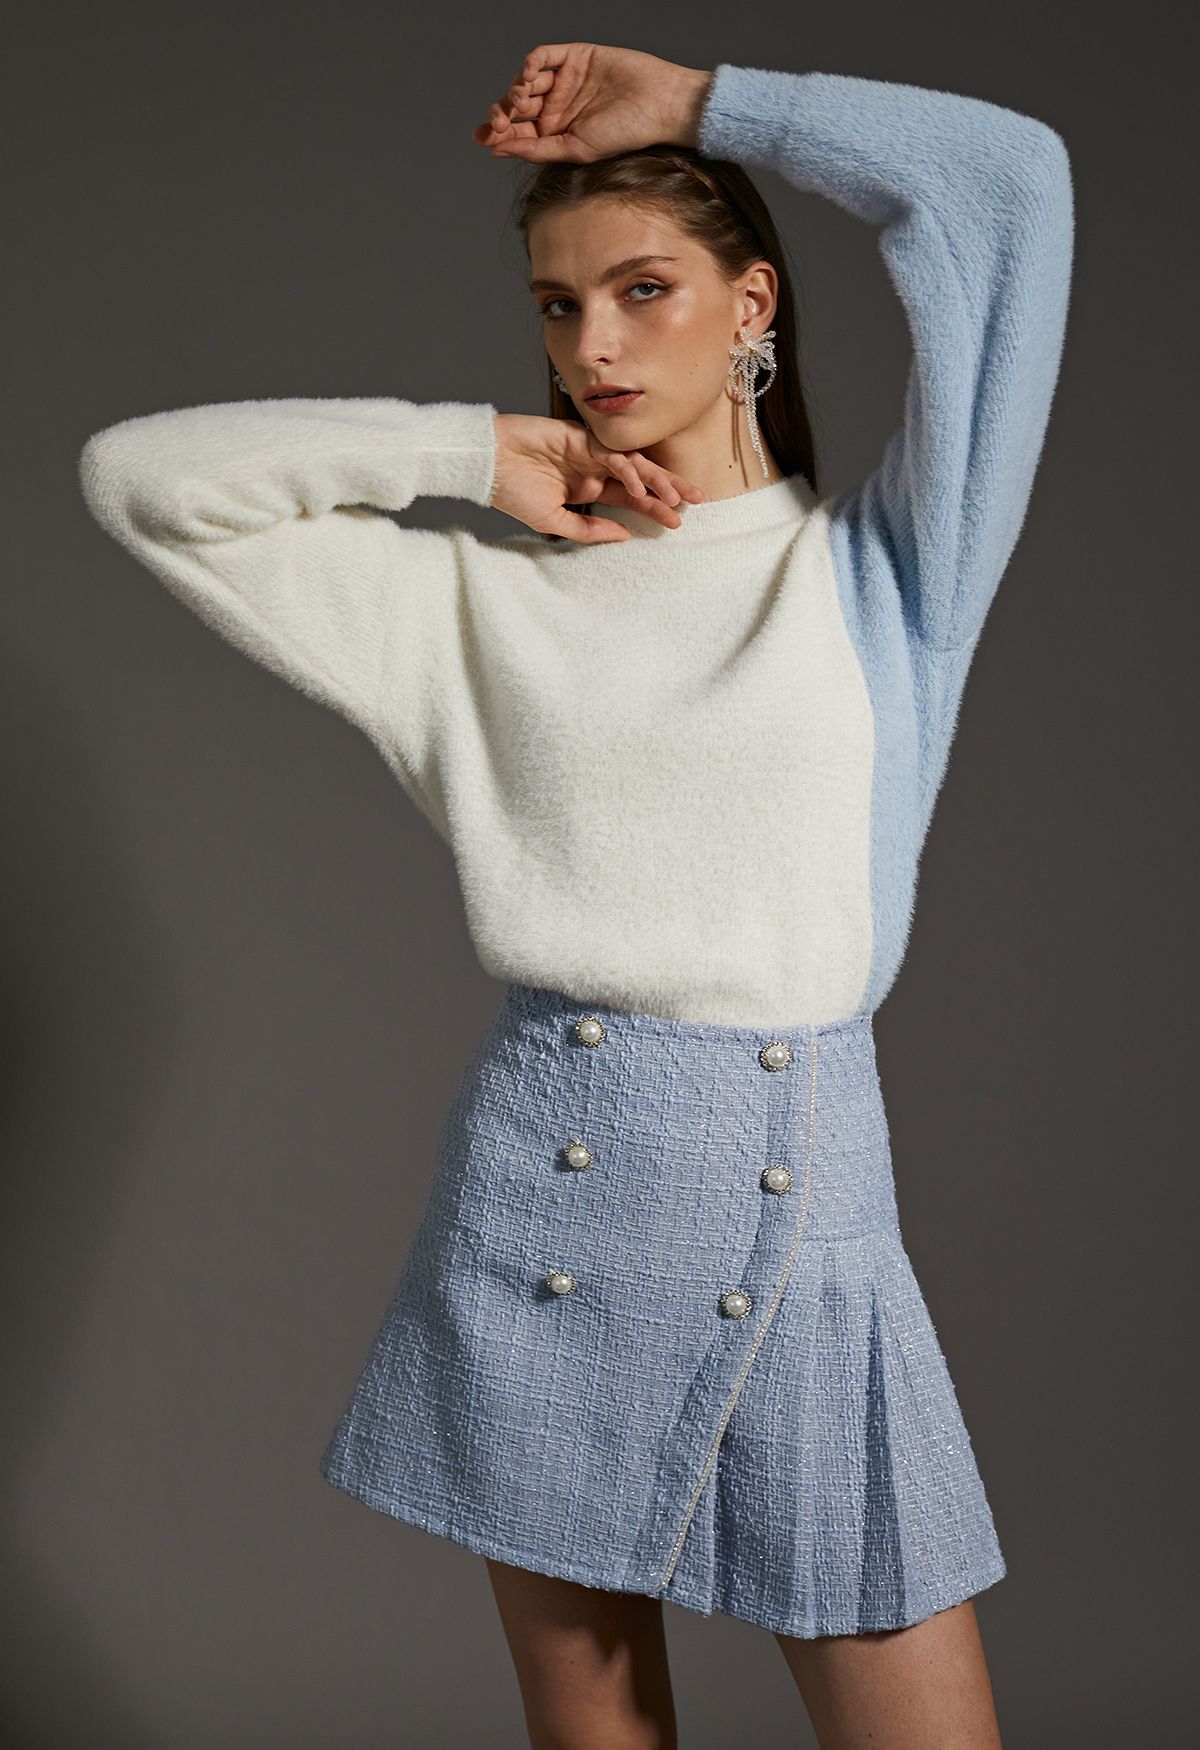 Suéter de punto difuso con dobladillo asimétrico bicolor en crema